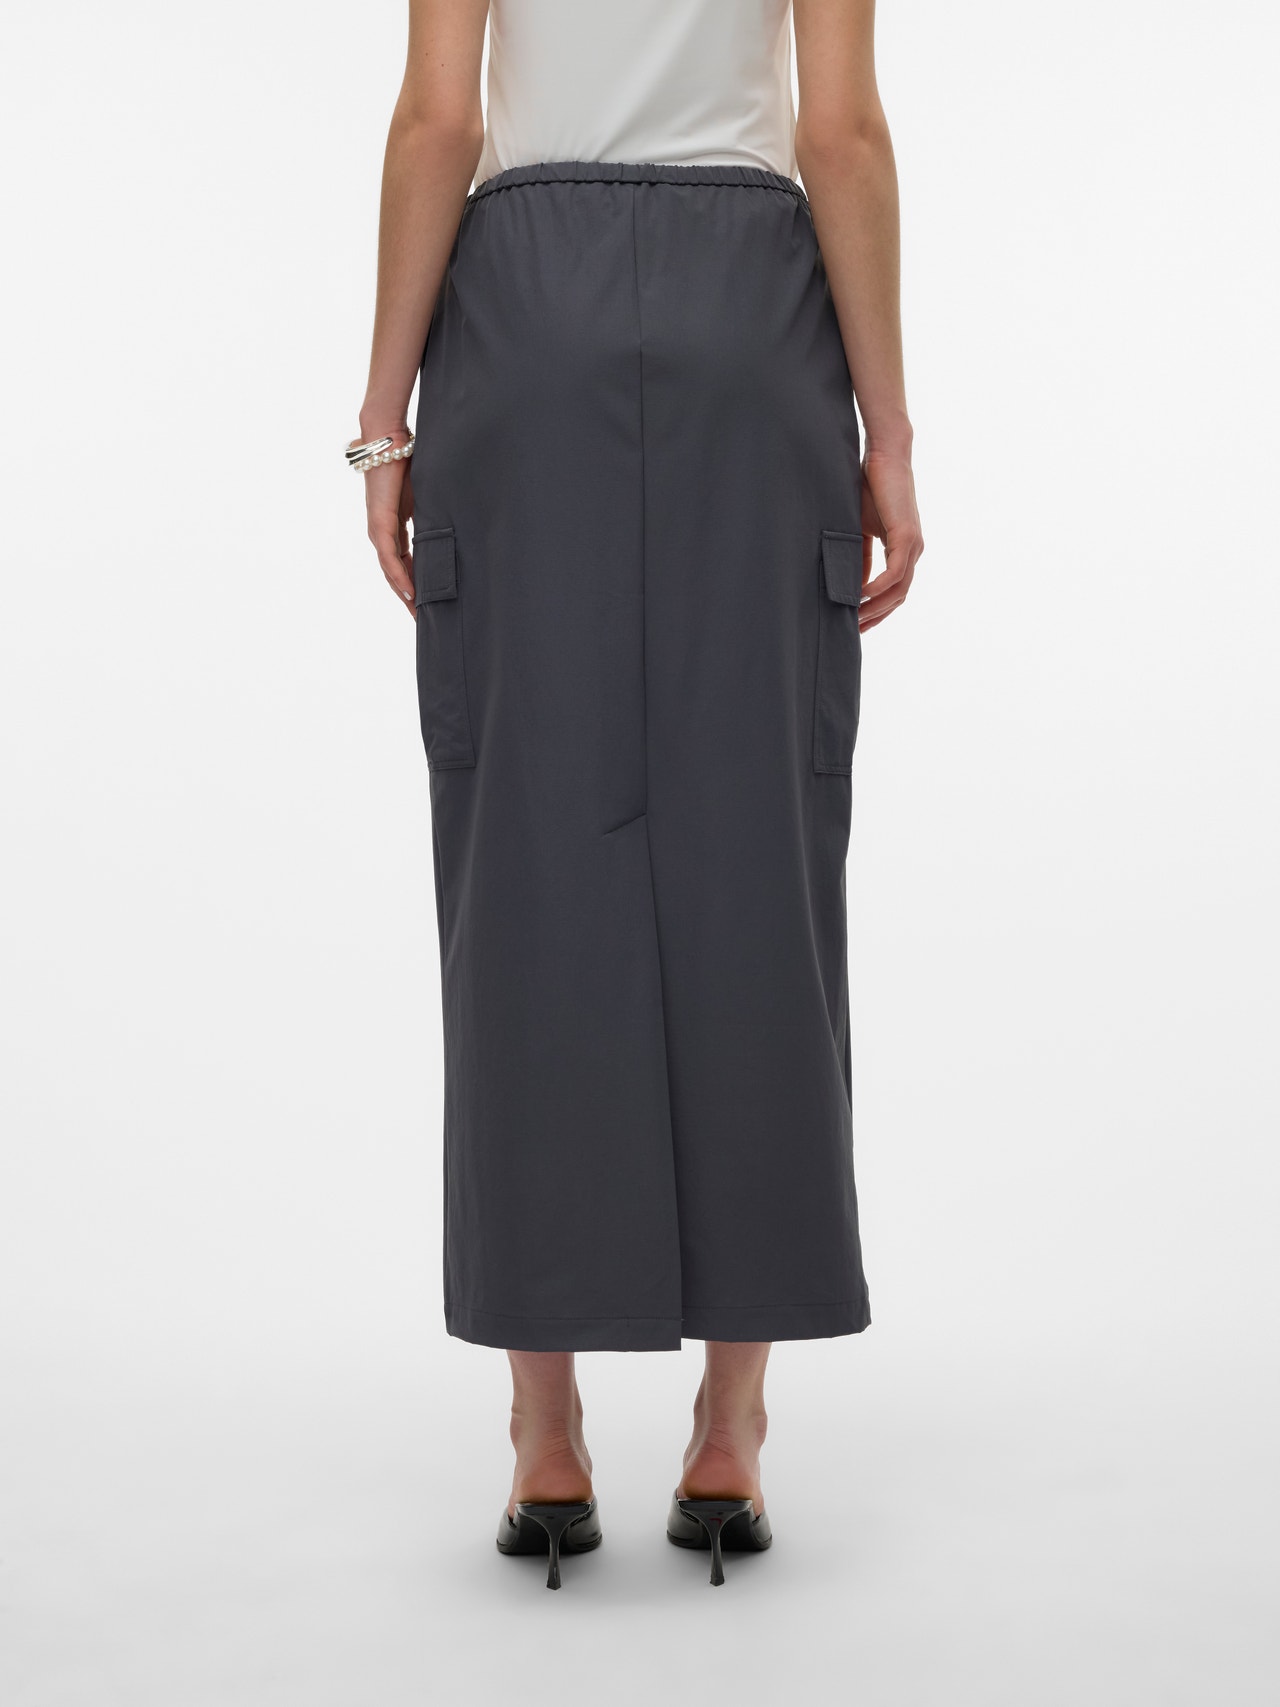 Vero Moda VMKIMBERLY Long Skirt -Asphalt - 10316122